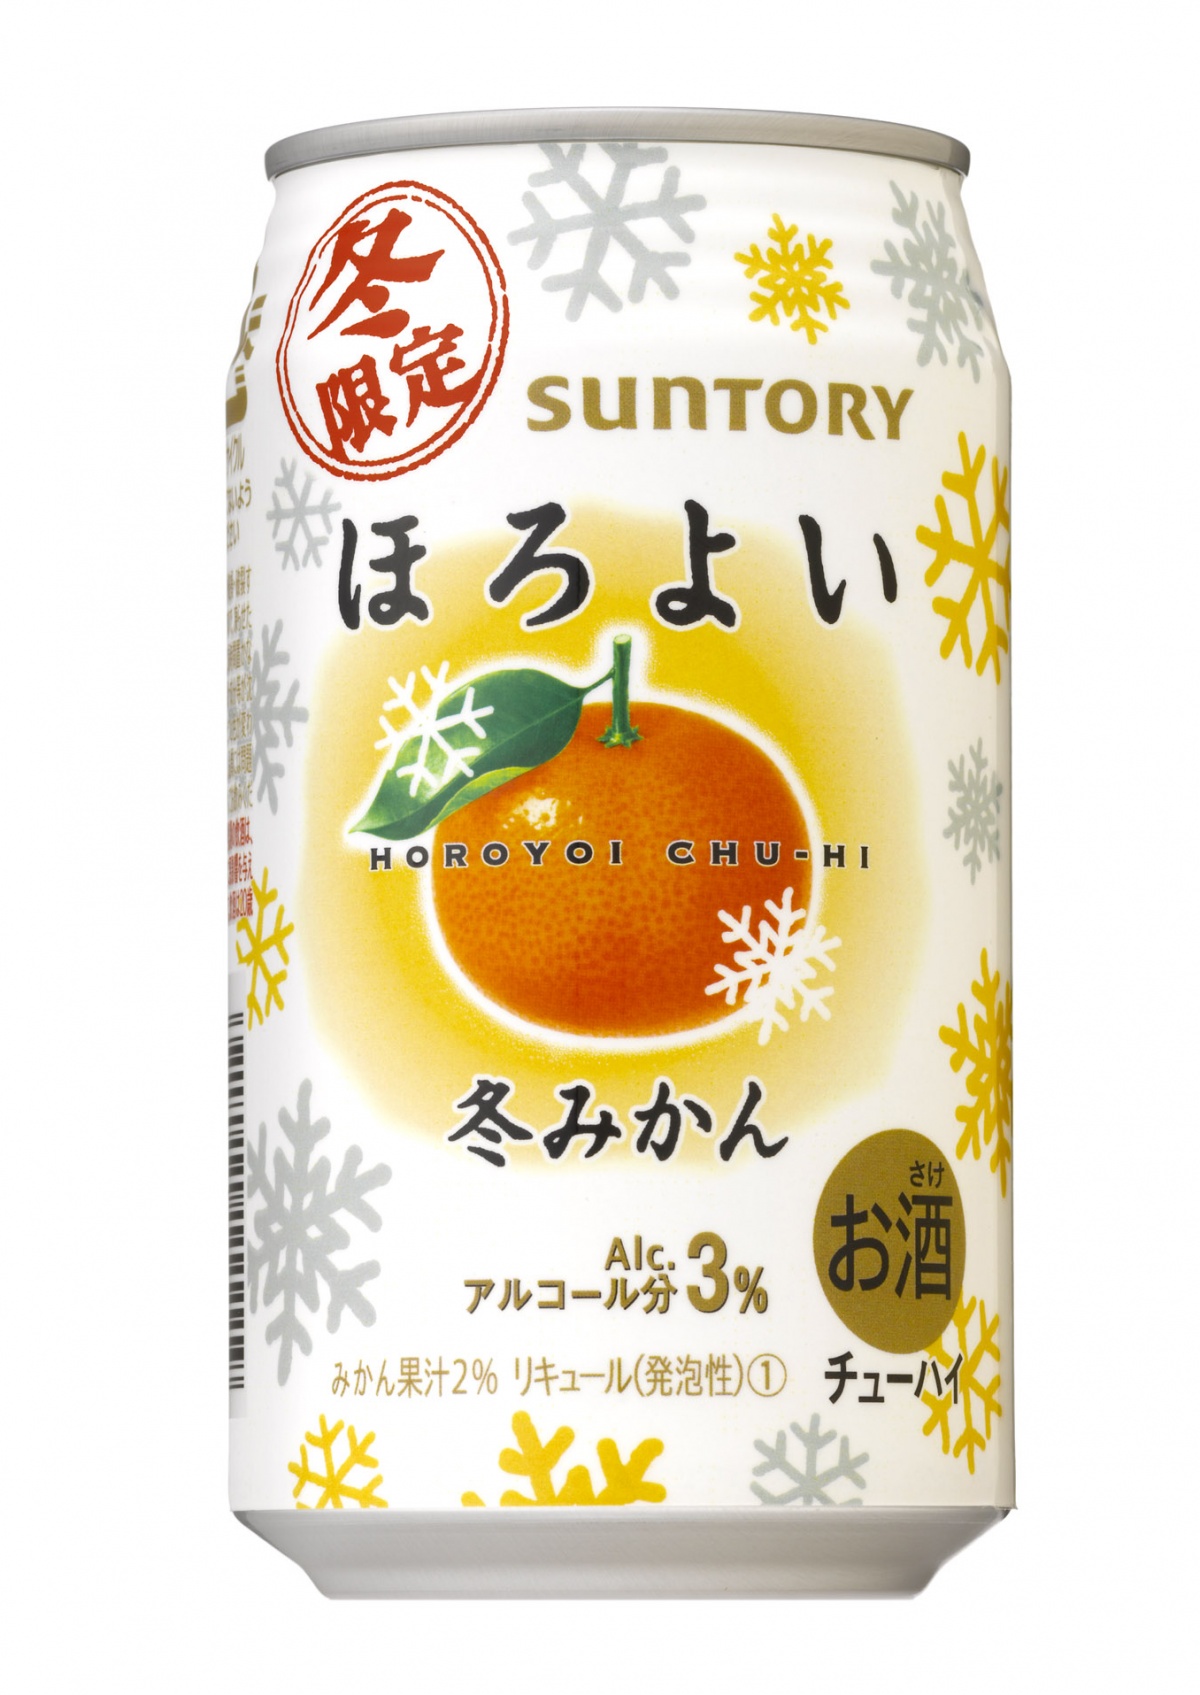 5. ค็อกเทลญี่ปุ่นรสส้มฤดูหนาว